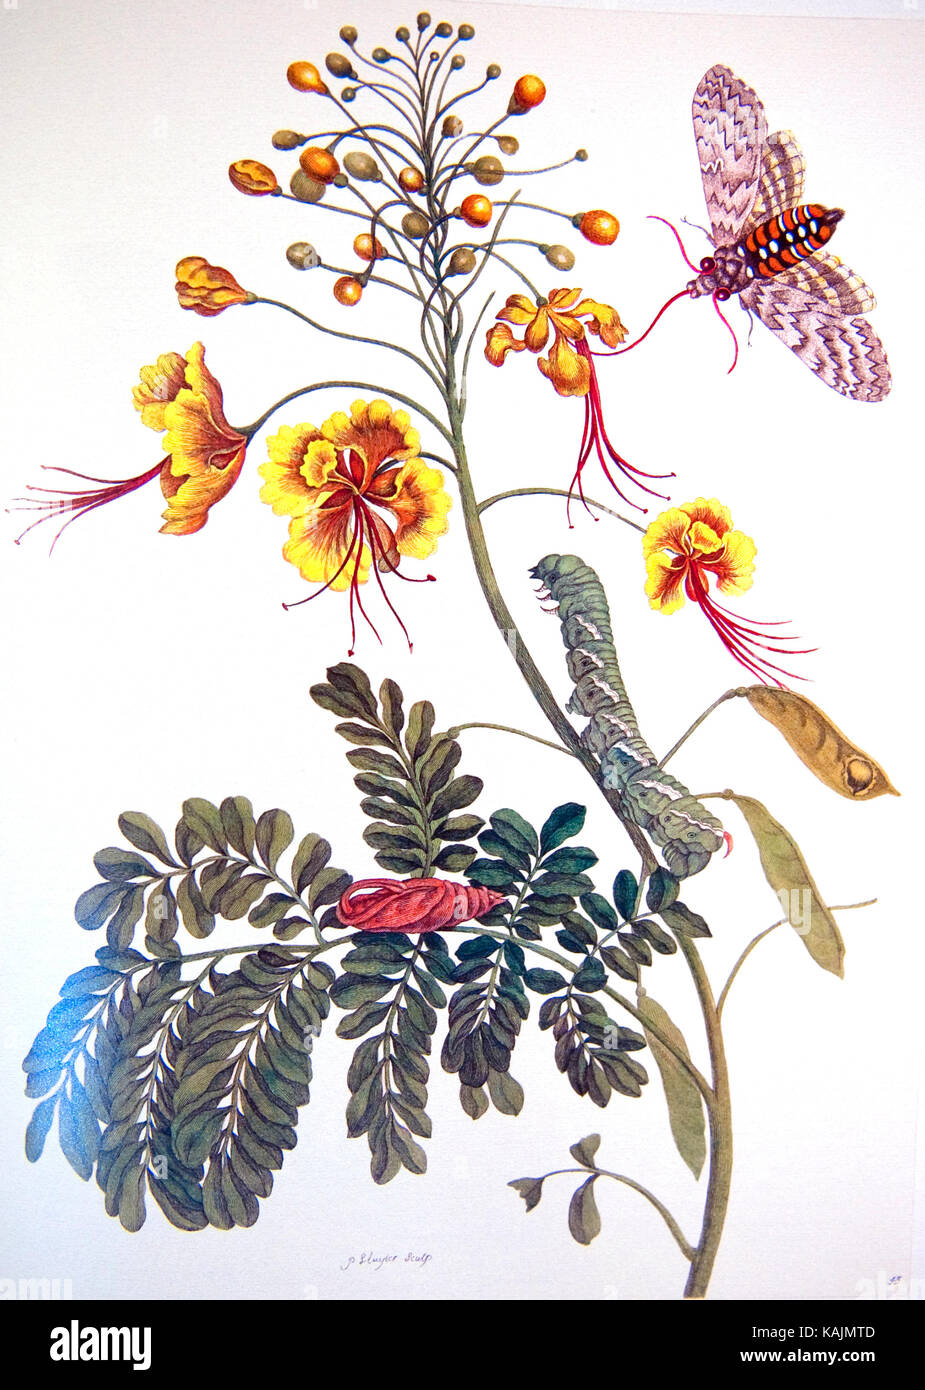 Maria MERIAN (1647-1717) naturalista alemán. Ilustraciones de su libro de 1705 Metamorfosis insectorum Surinam amensium Foto de stock